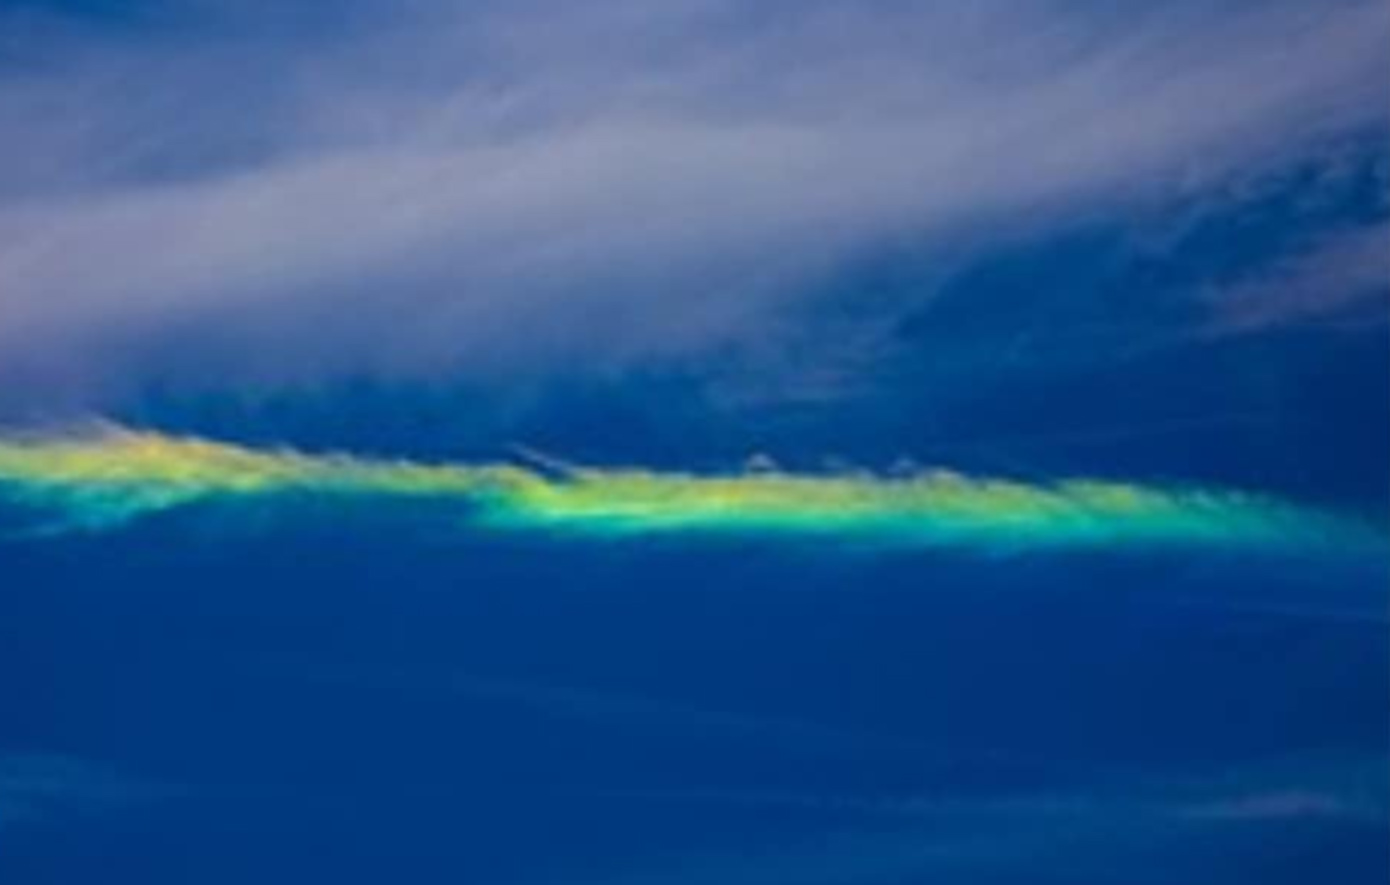 Ένα σπάνιο φαινόμενο με την ονομασία «Fire Rainbow» εμφανίστηκε στον ουρανό &#8211; Ο Θοδωρής Κολυδάς εξηγεί τι είναι